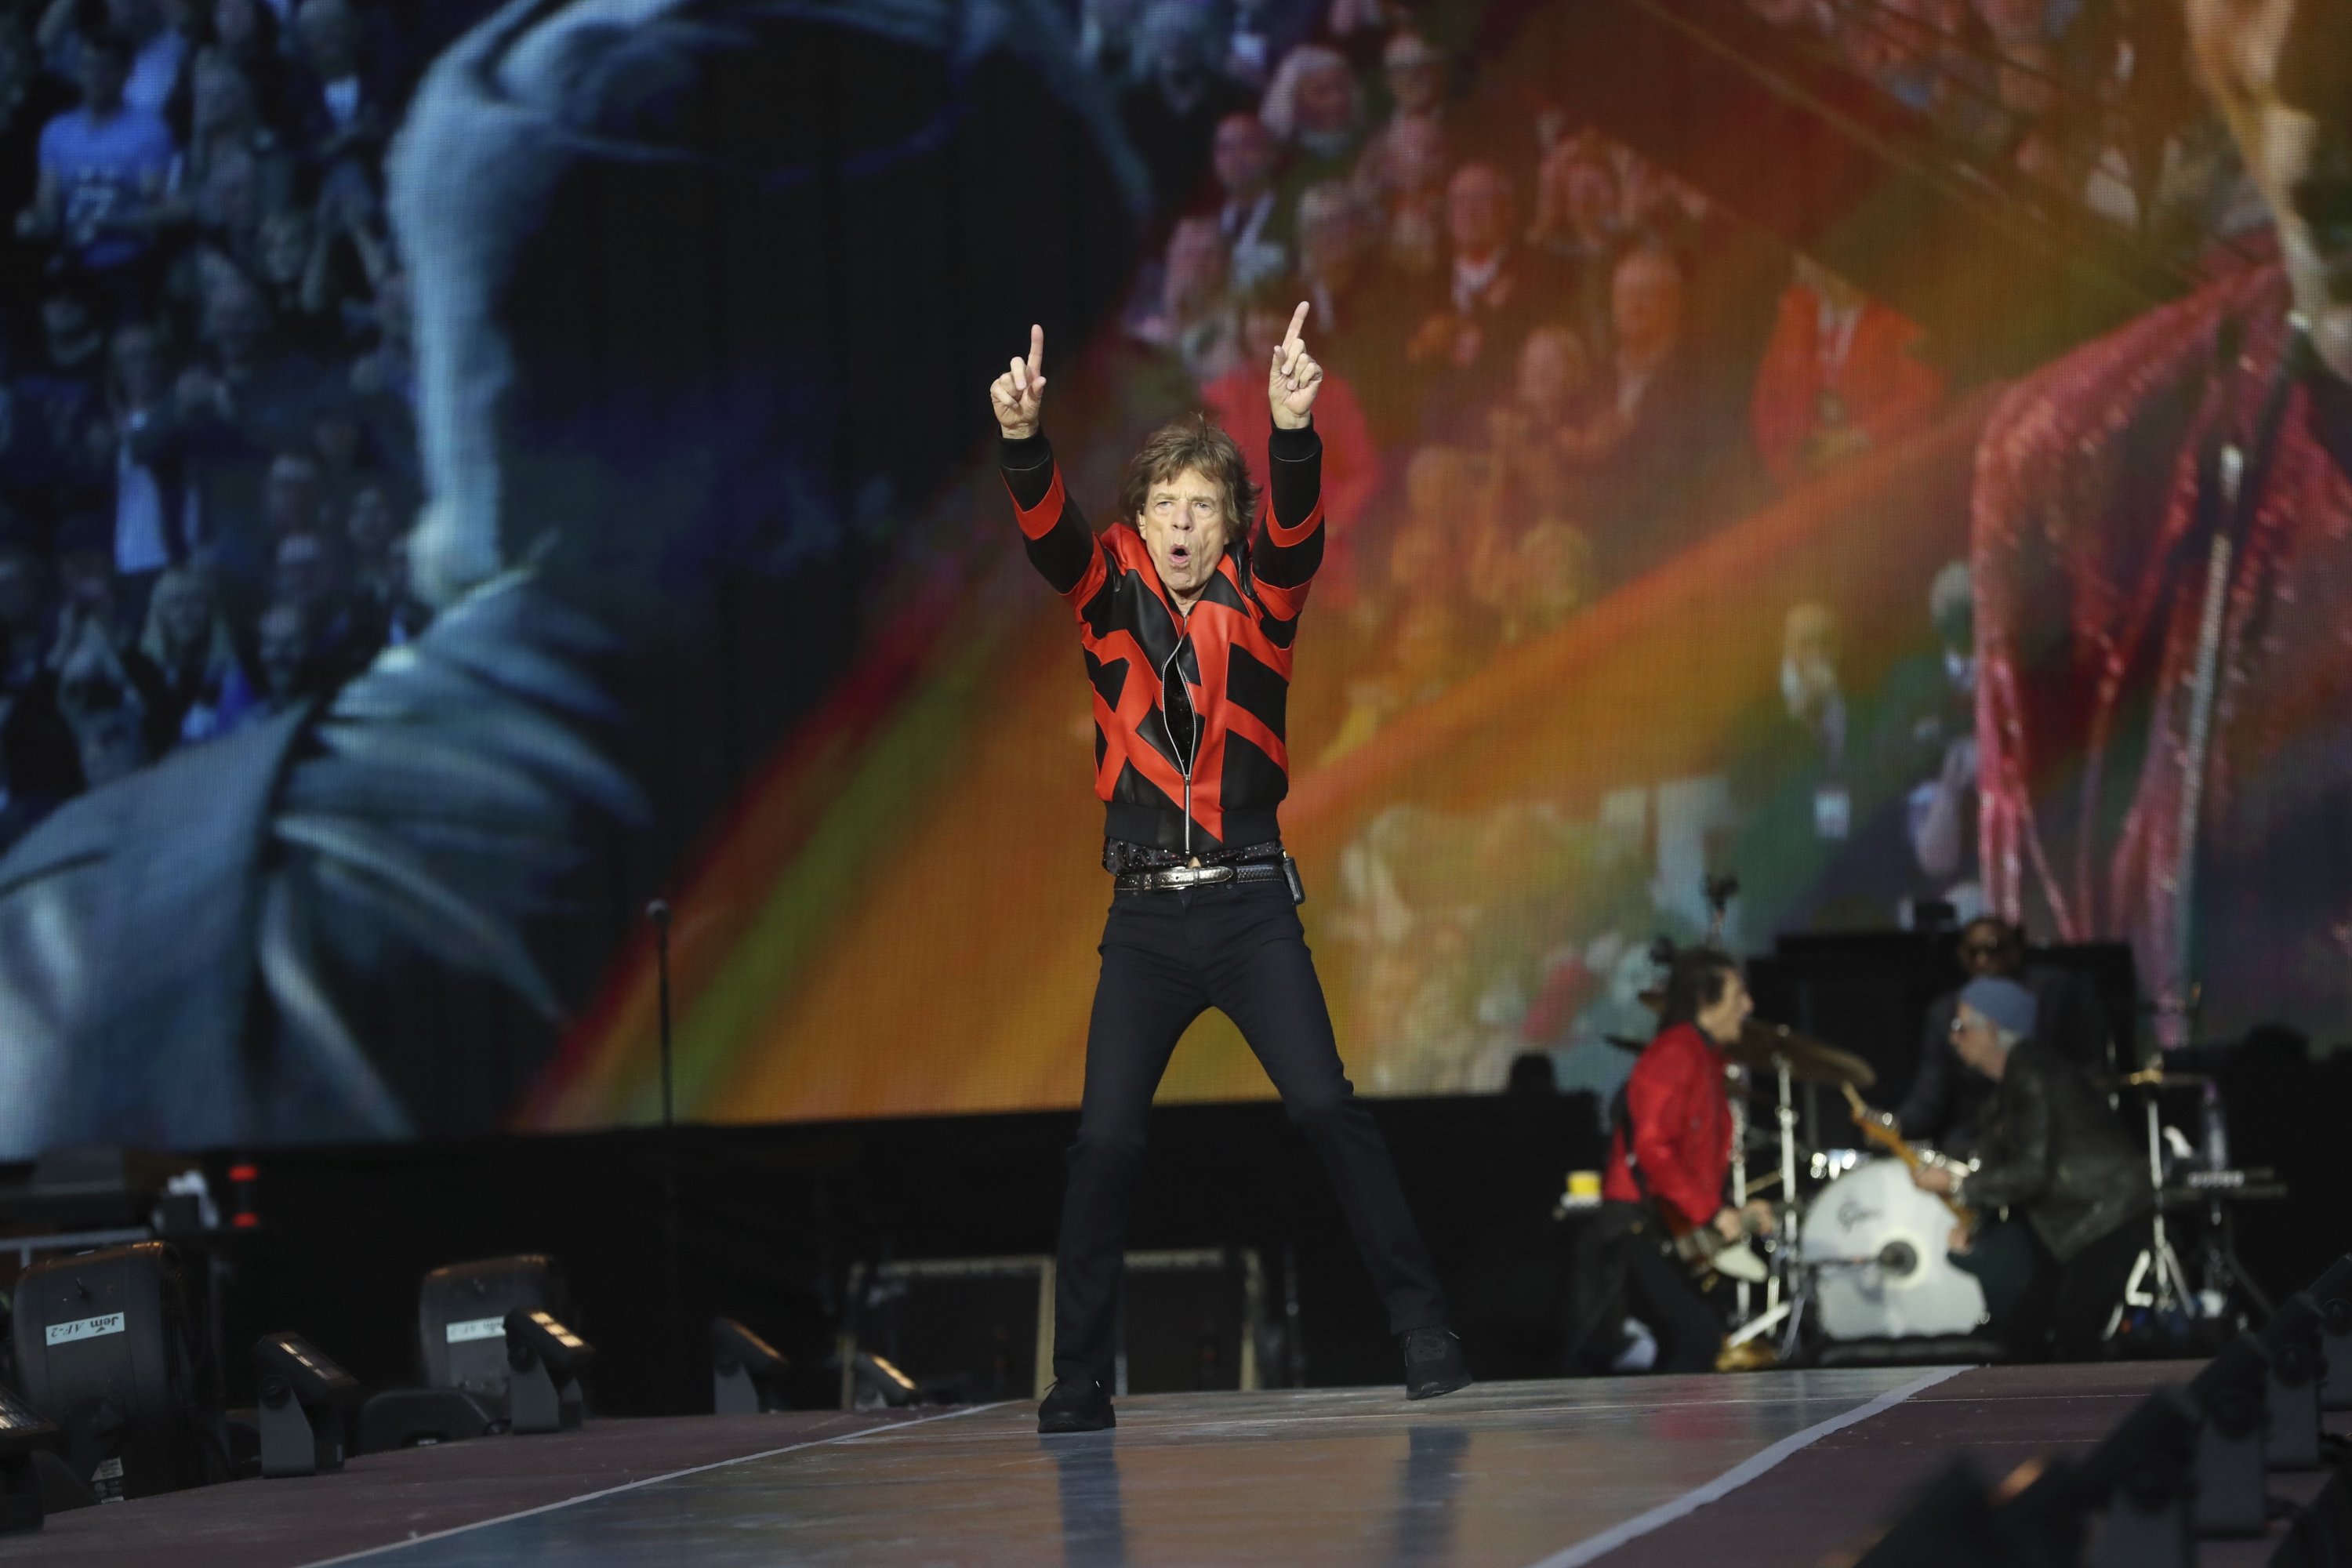 Penyanyi Mick Jagger dari Rolling Stones bermain di atas panggung di stadion Anfield di Liverpool, Inggris, selama konser sebagai bagian dari konser mereka. 